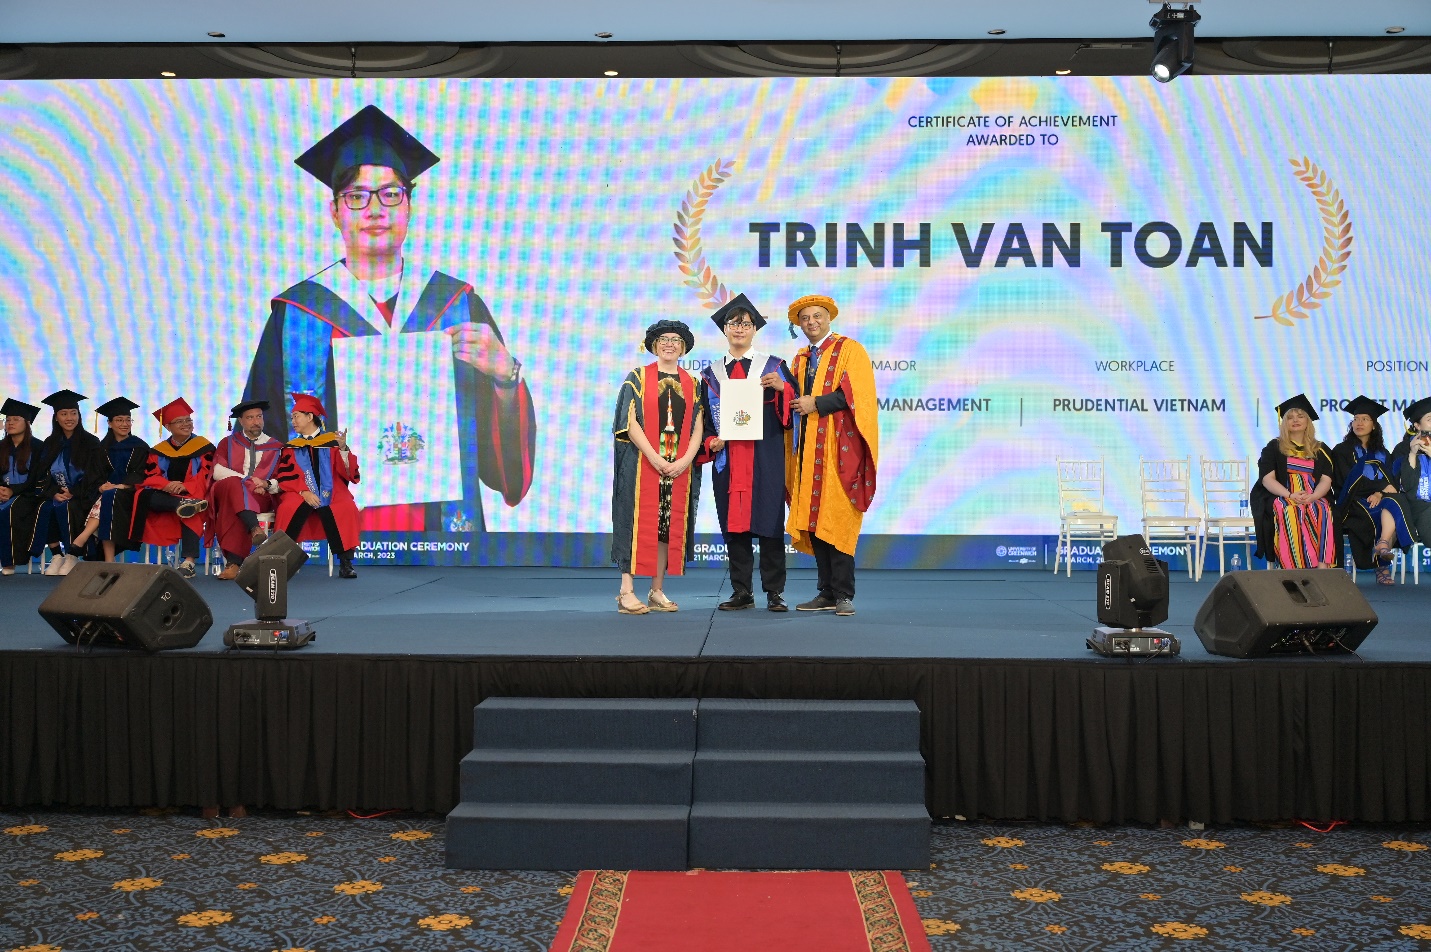 Chàng trai tốt nghiệp ngành IT tại Nhật thành công khi quay trở về Việt Nam theo đuổi ngành Quản trị kinh doanh - Ảnh 1.